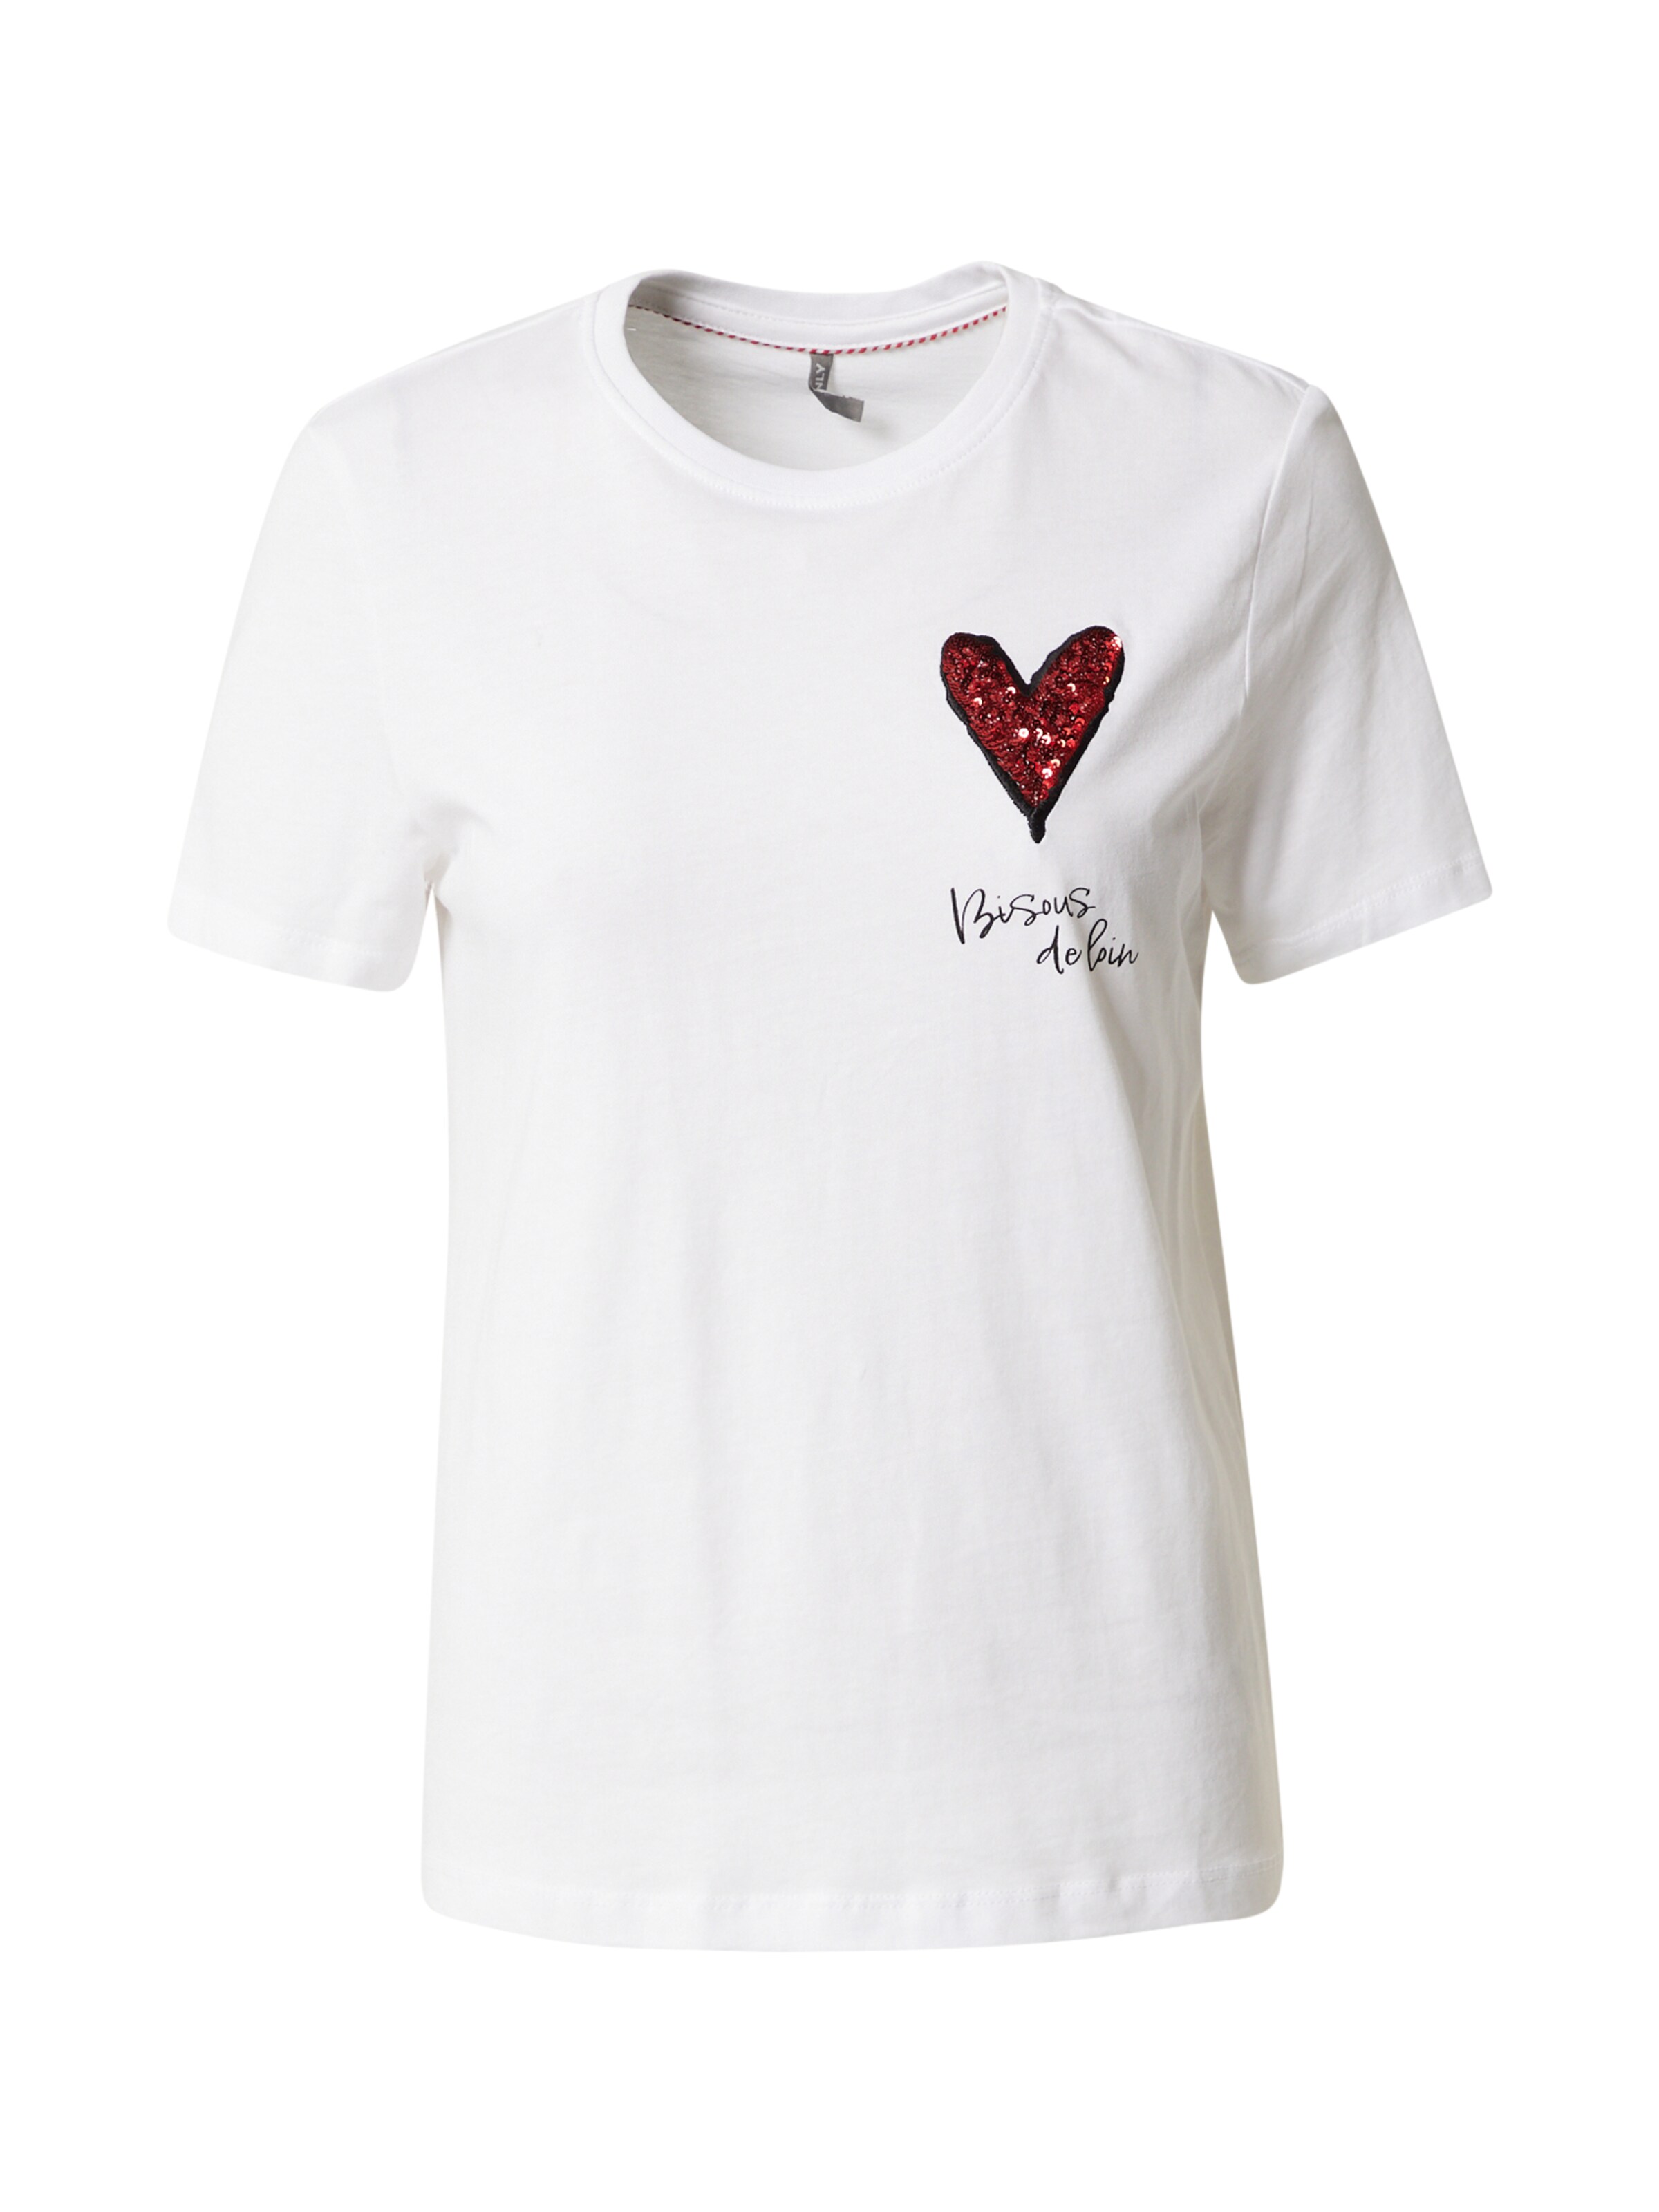 ONLY T-Shirt Rabatt 60 % Dunkelblau/Weiß M DAMEN Hemden & T-Shirts T-Shirt Marinière 